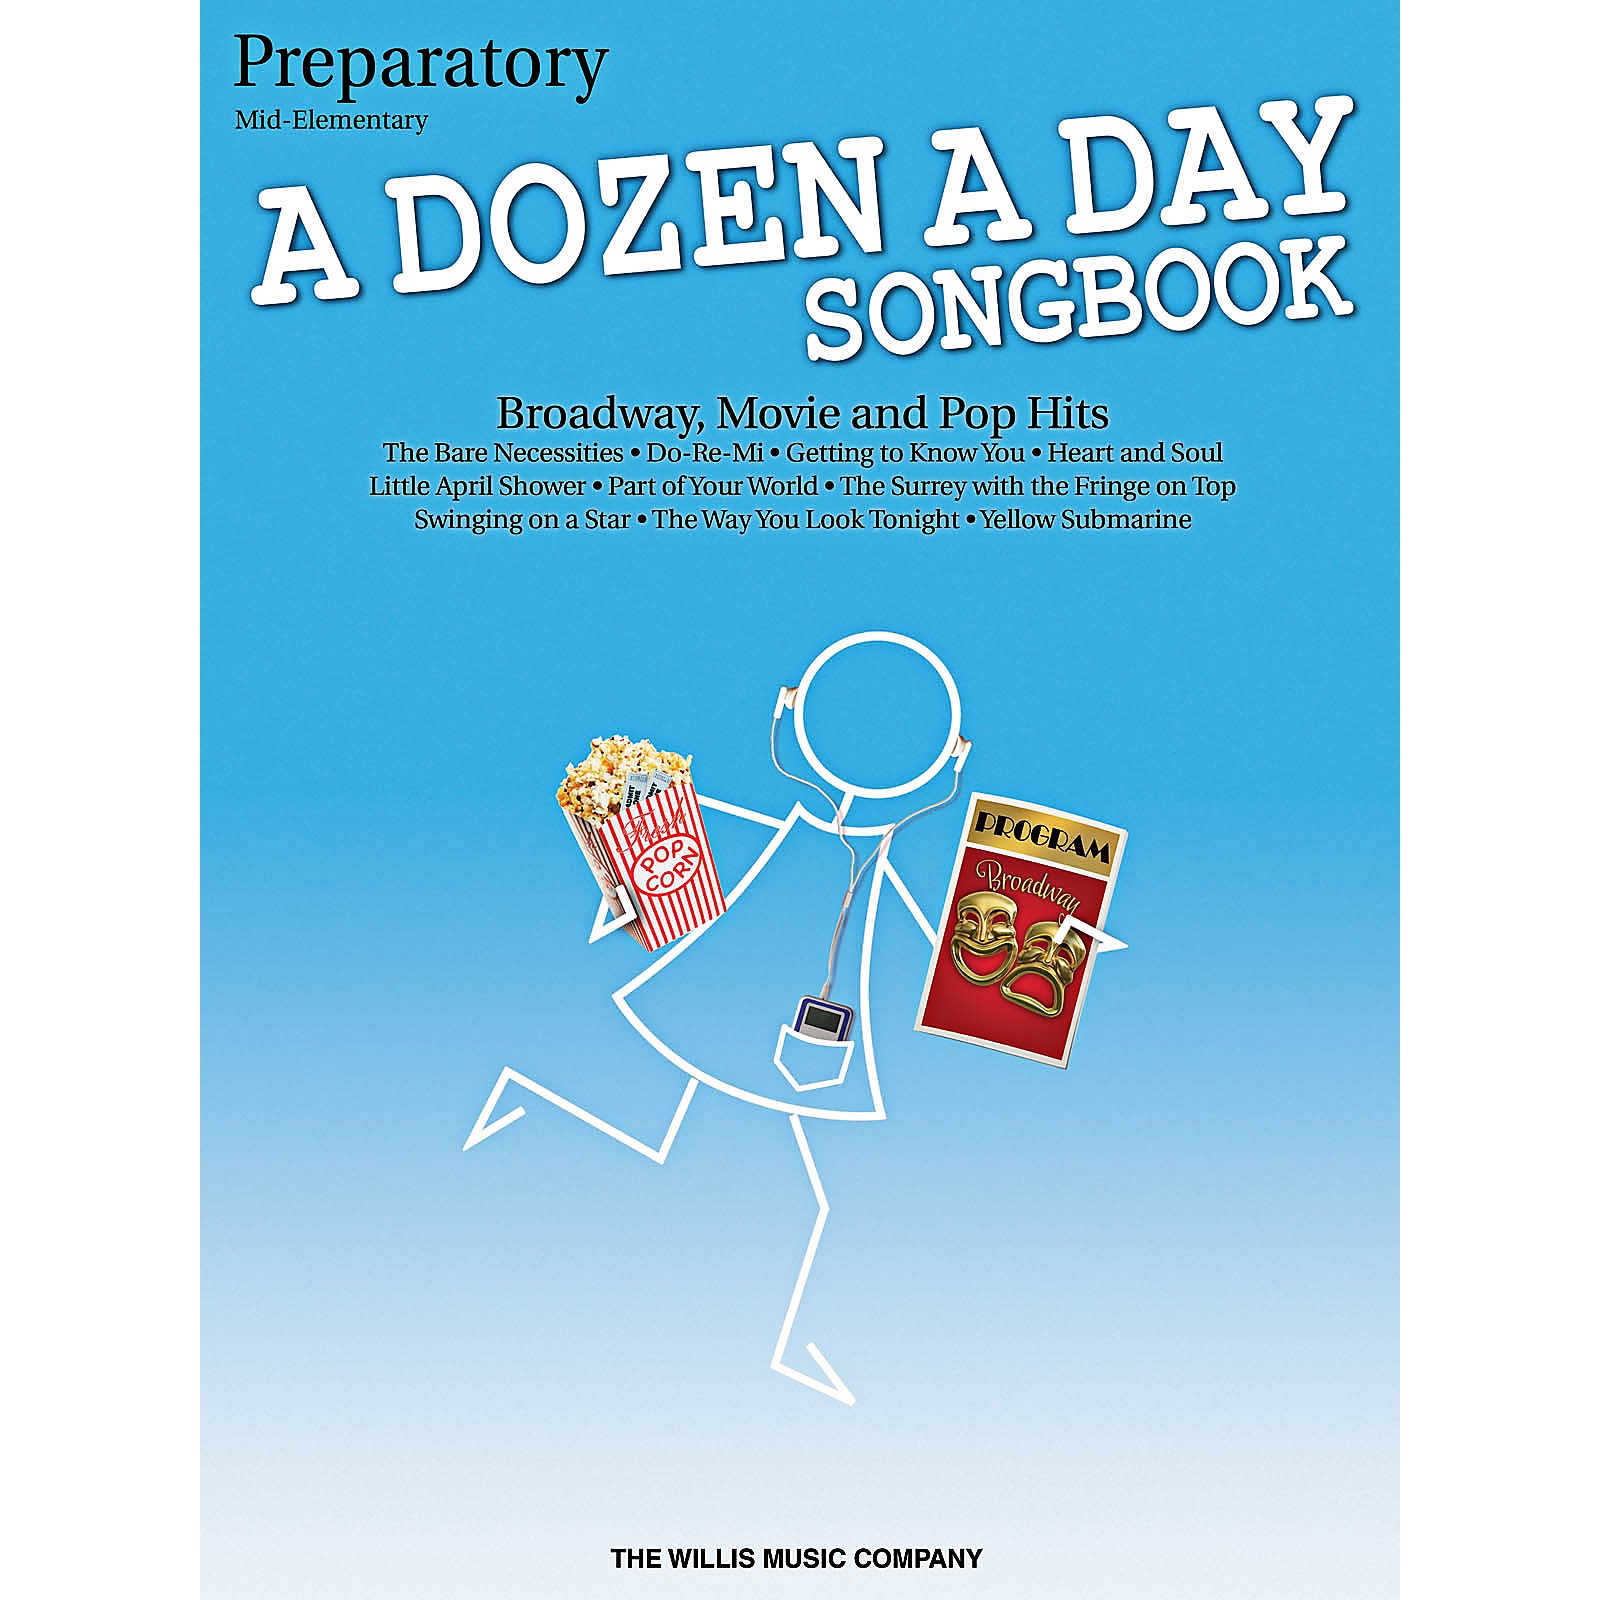 a dozen a day preparatory book pdf free download